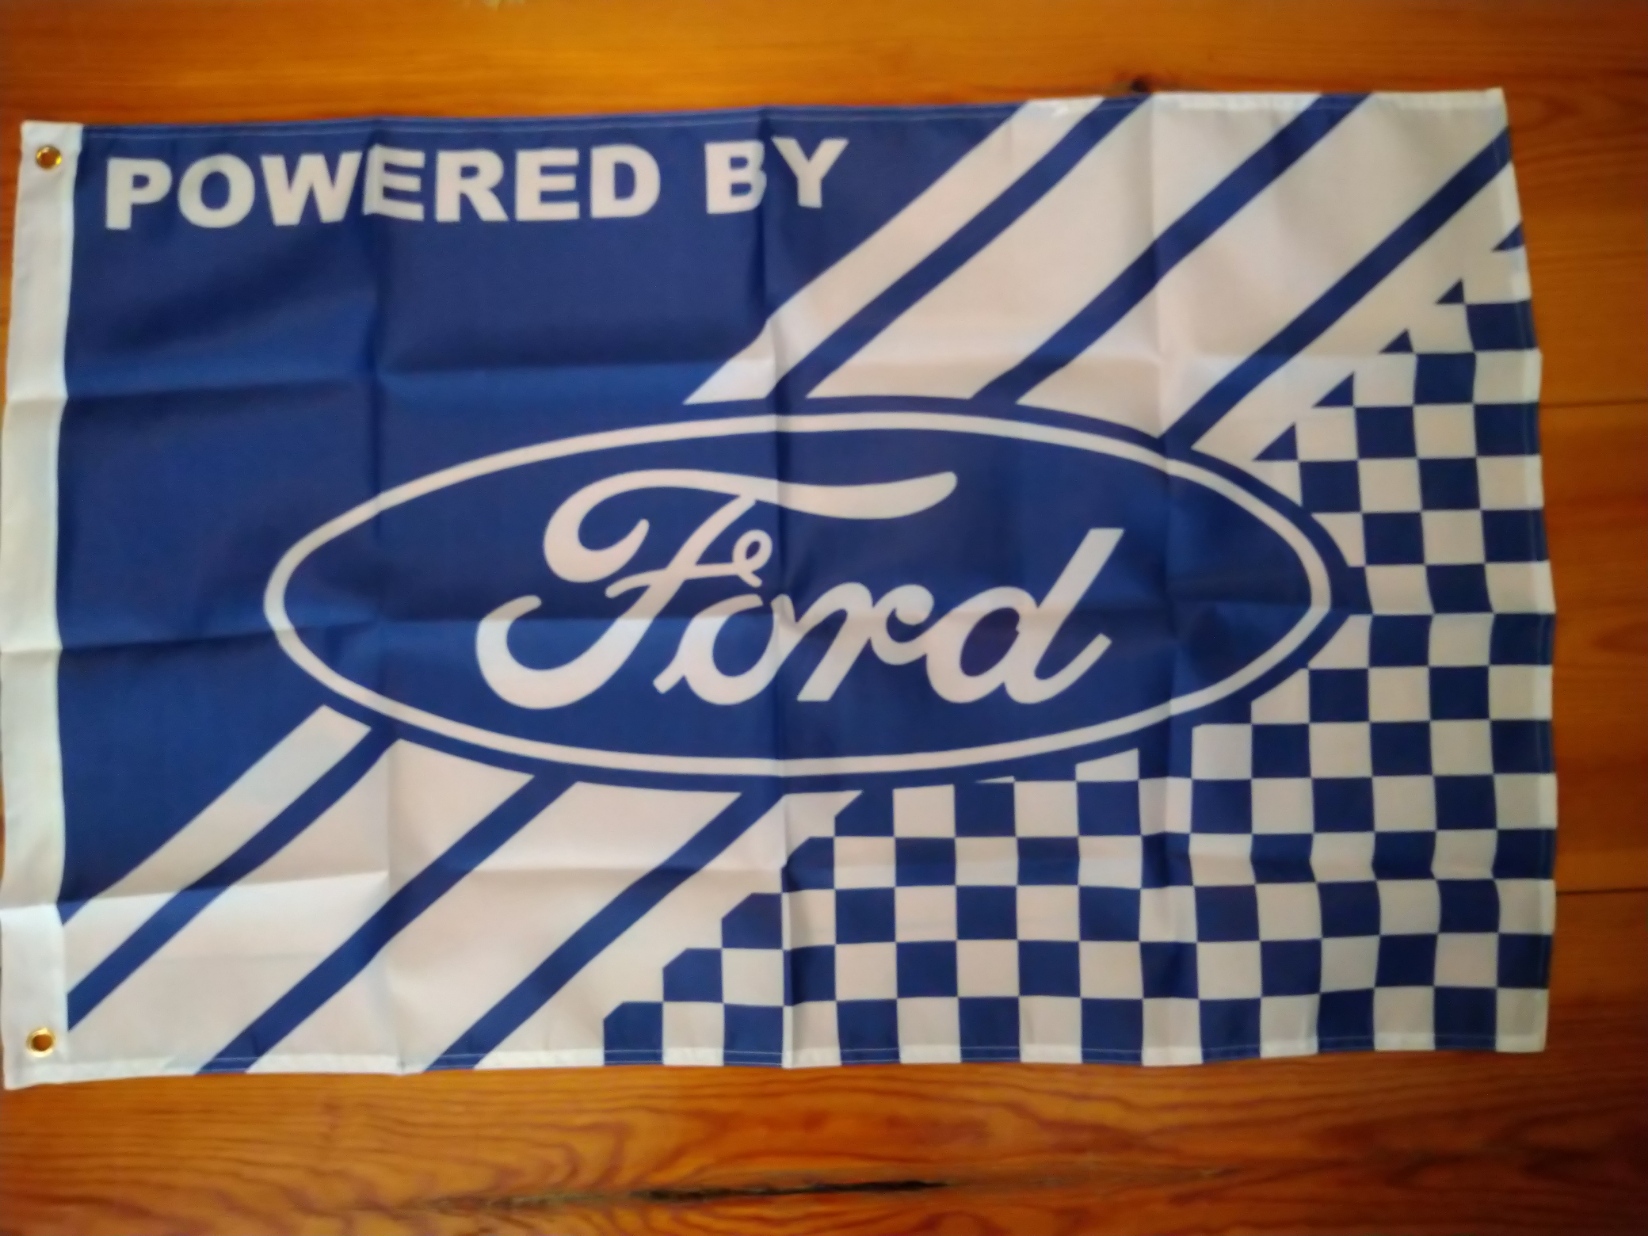 Flagga/Väggbonad Ford 60x90 cm